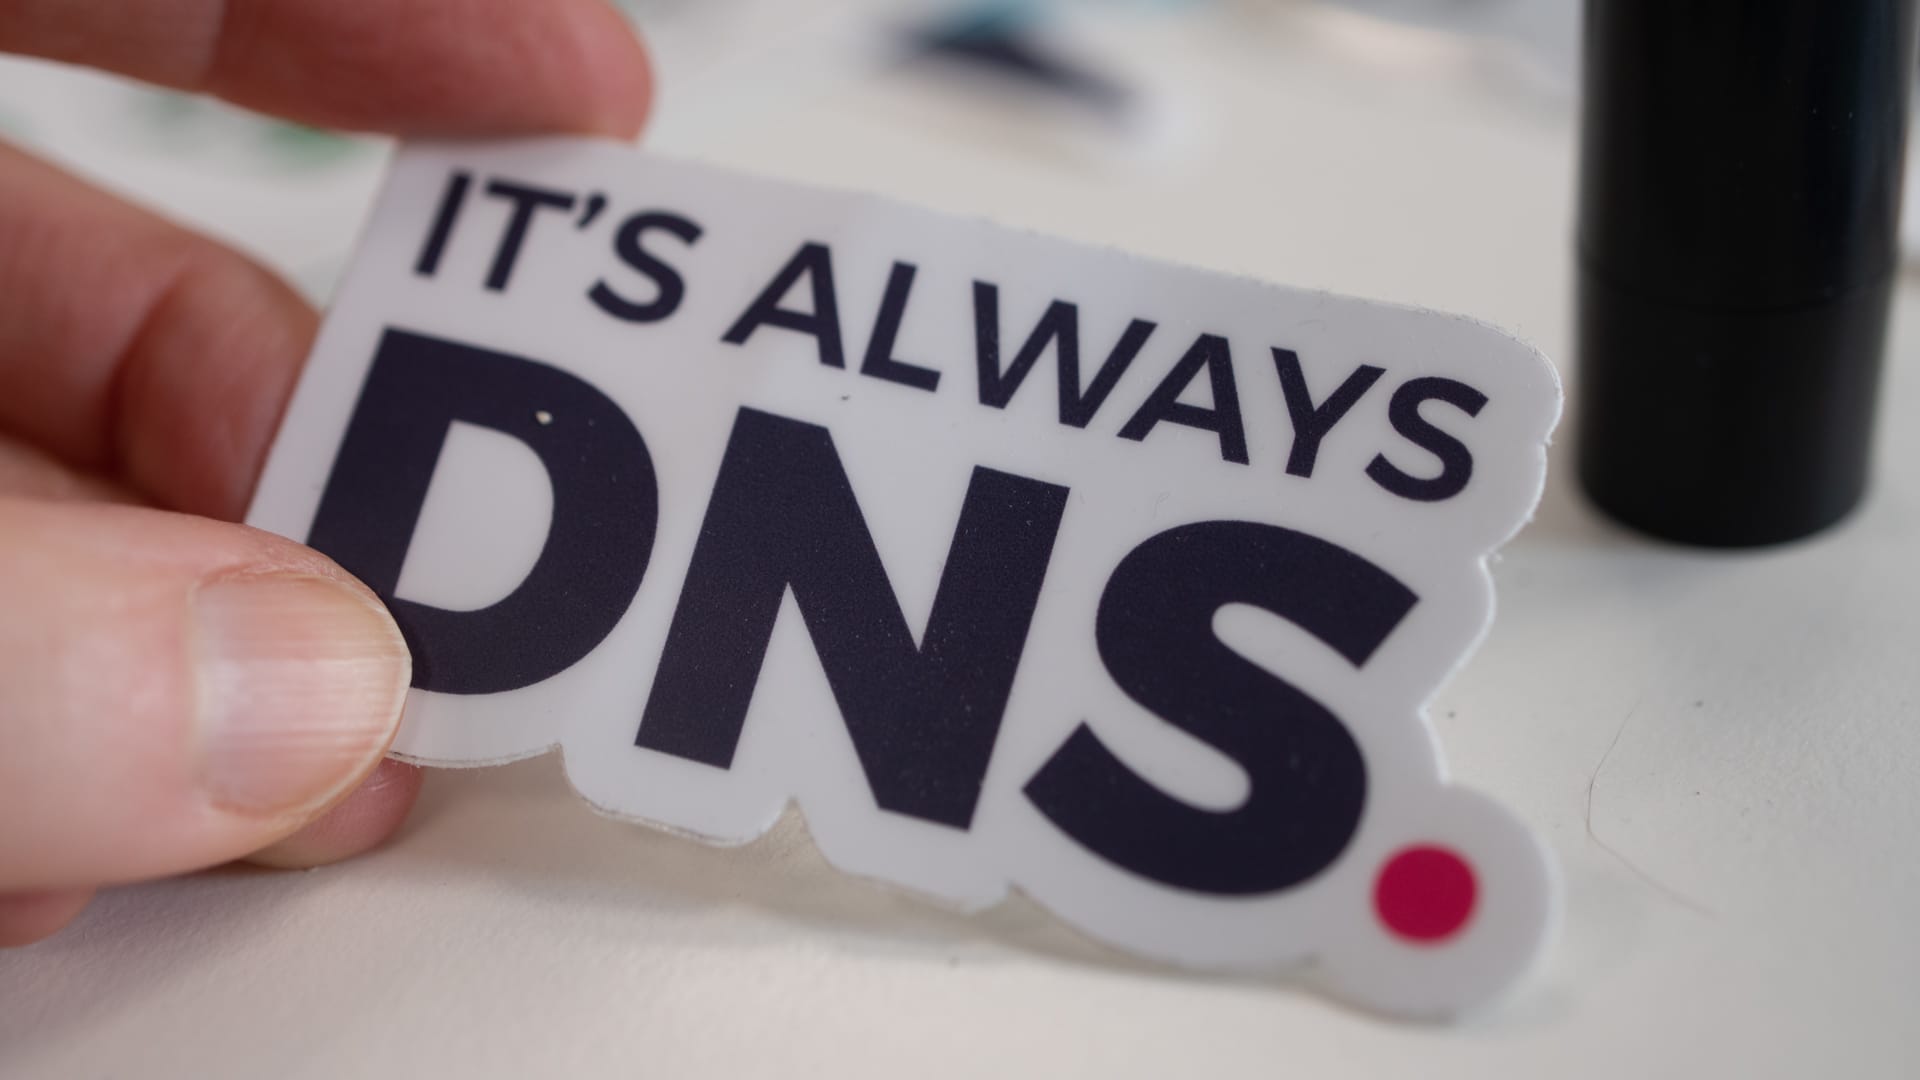 En hand som håller ett klistermärke som det står "it's always DNS" på.